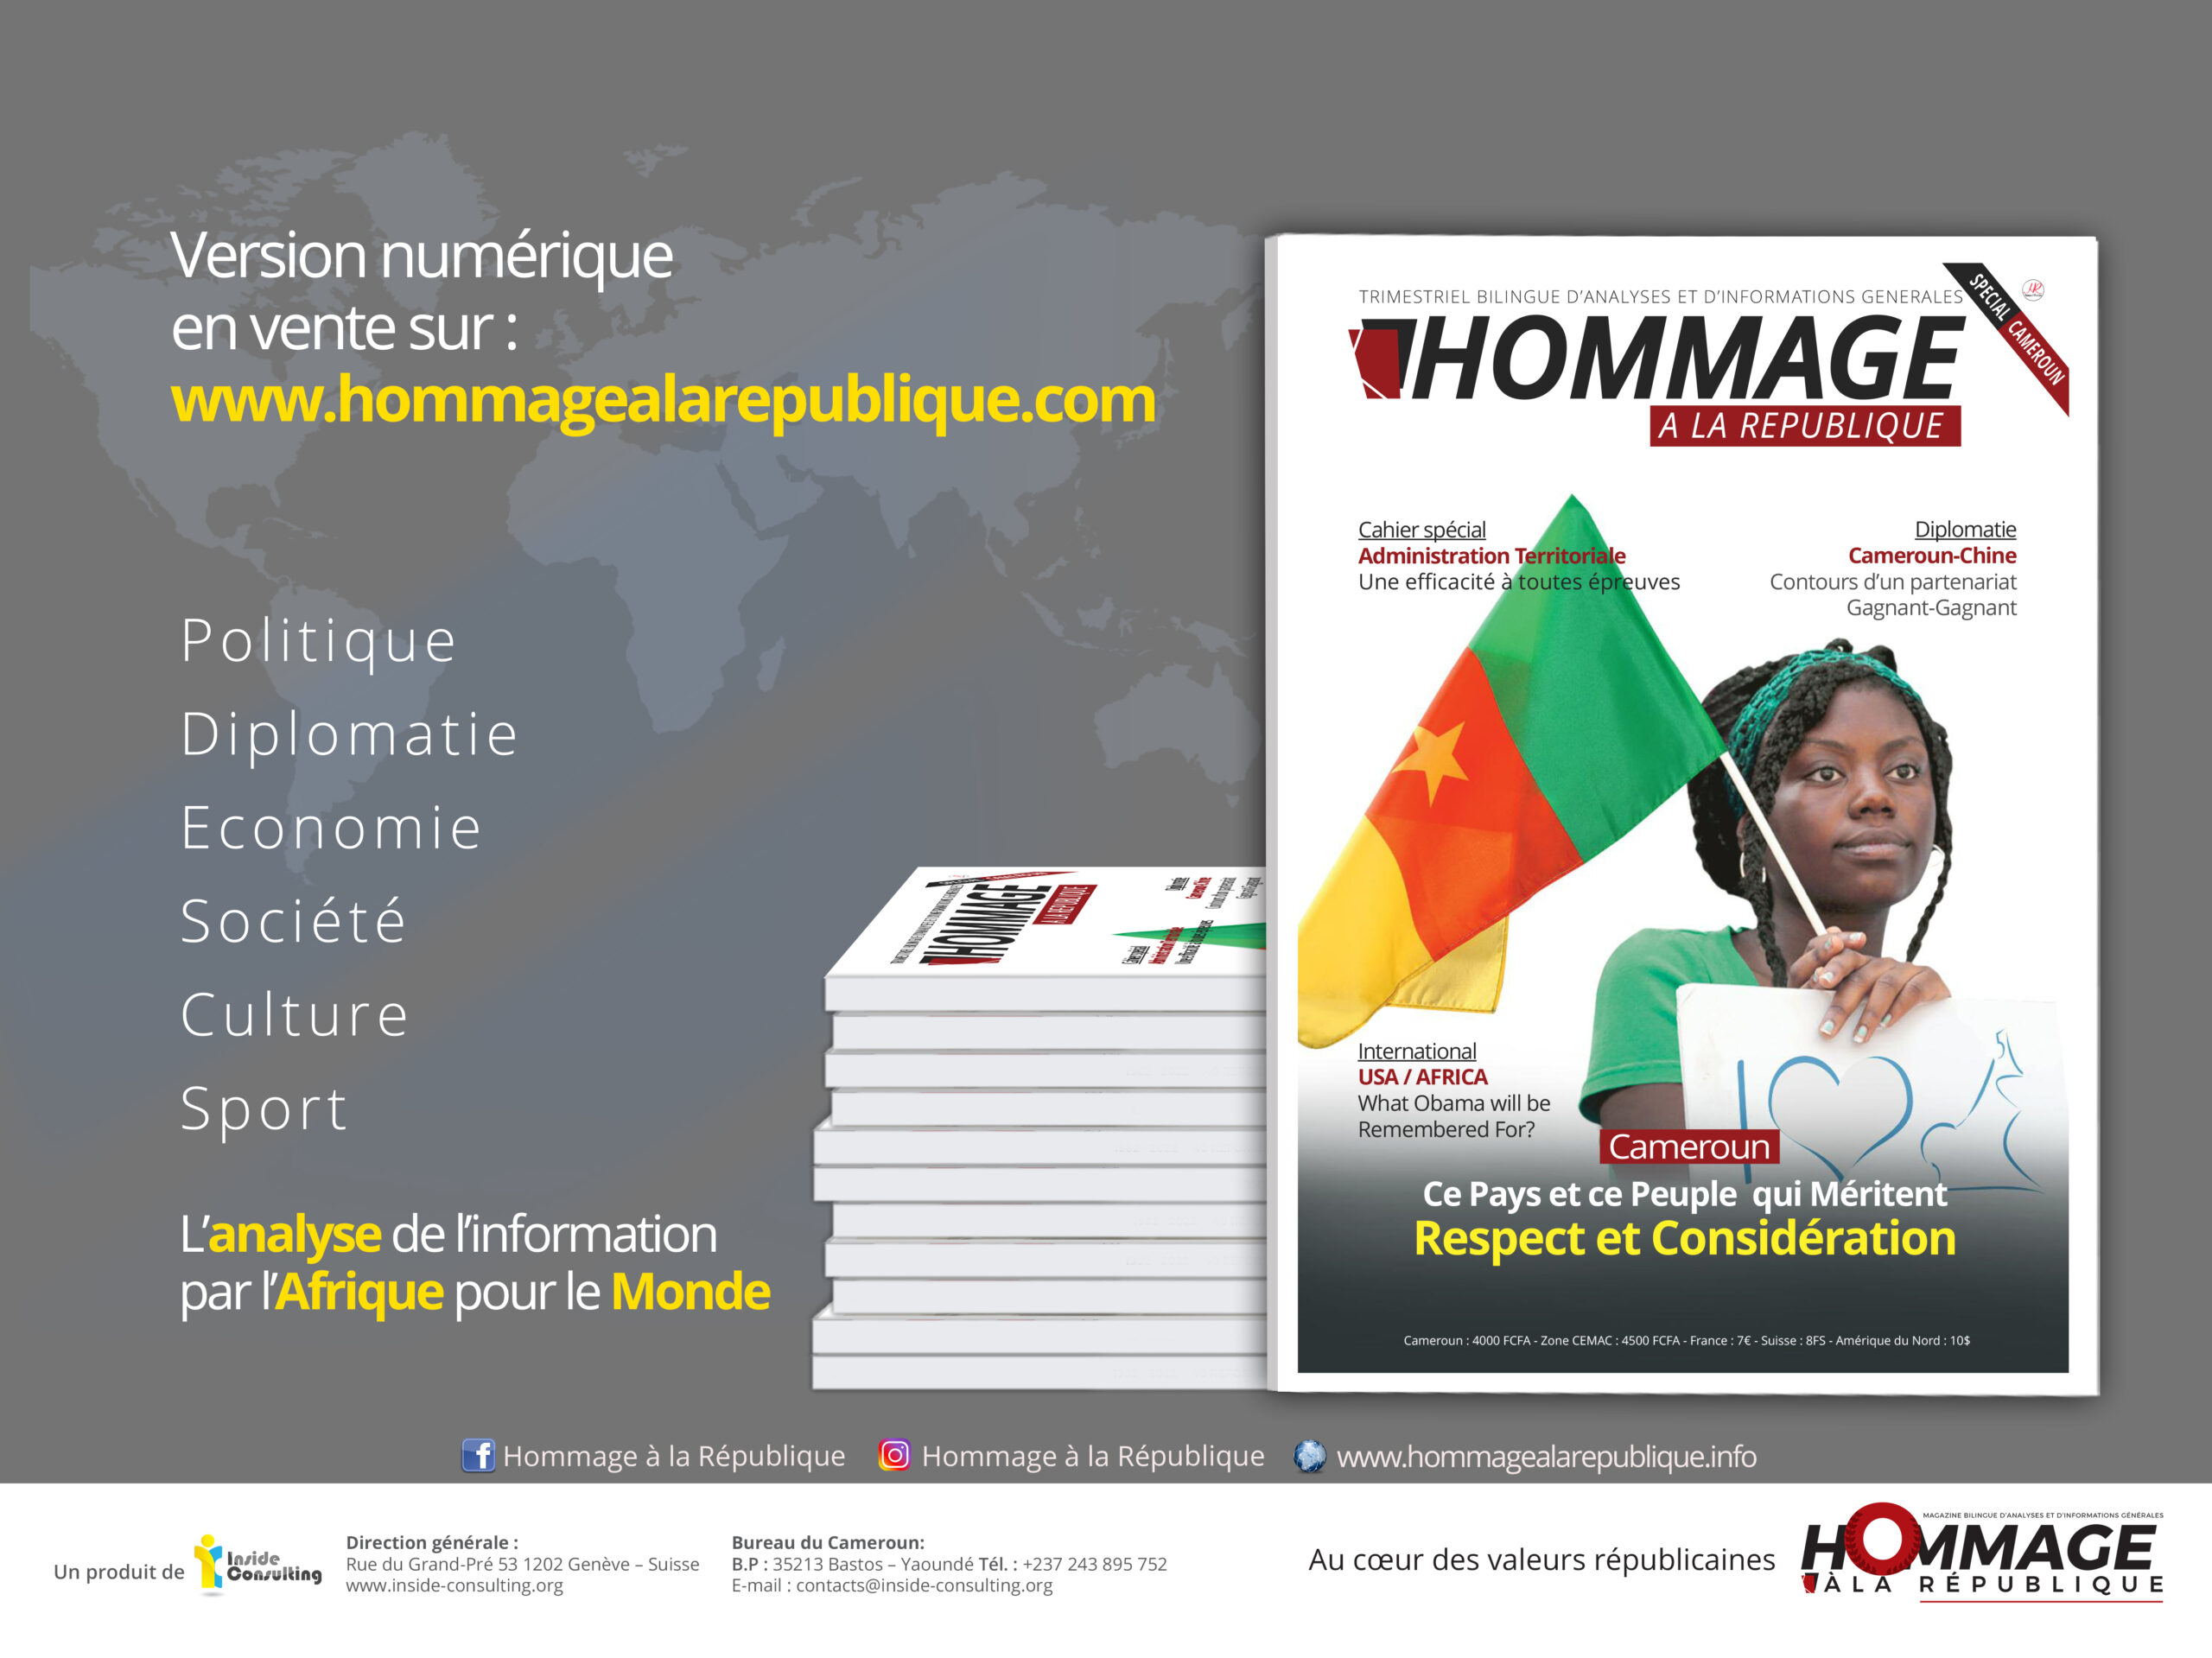 HOMMAGE À LA RÉPUBLIQUE CAMEROUN CE PAYS ET CE PEUPLE QUI MÉRITENT RESPECT ET CONSIDÉRATION